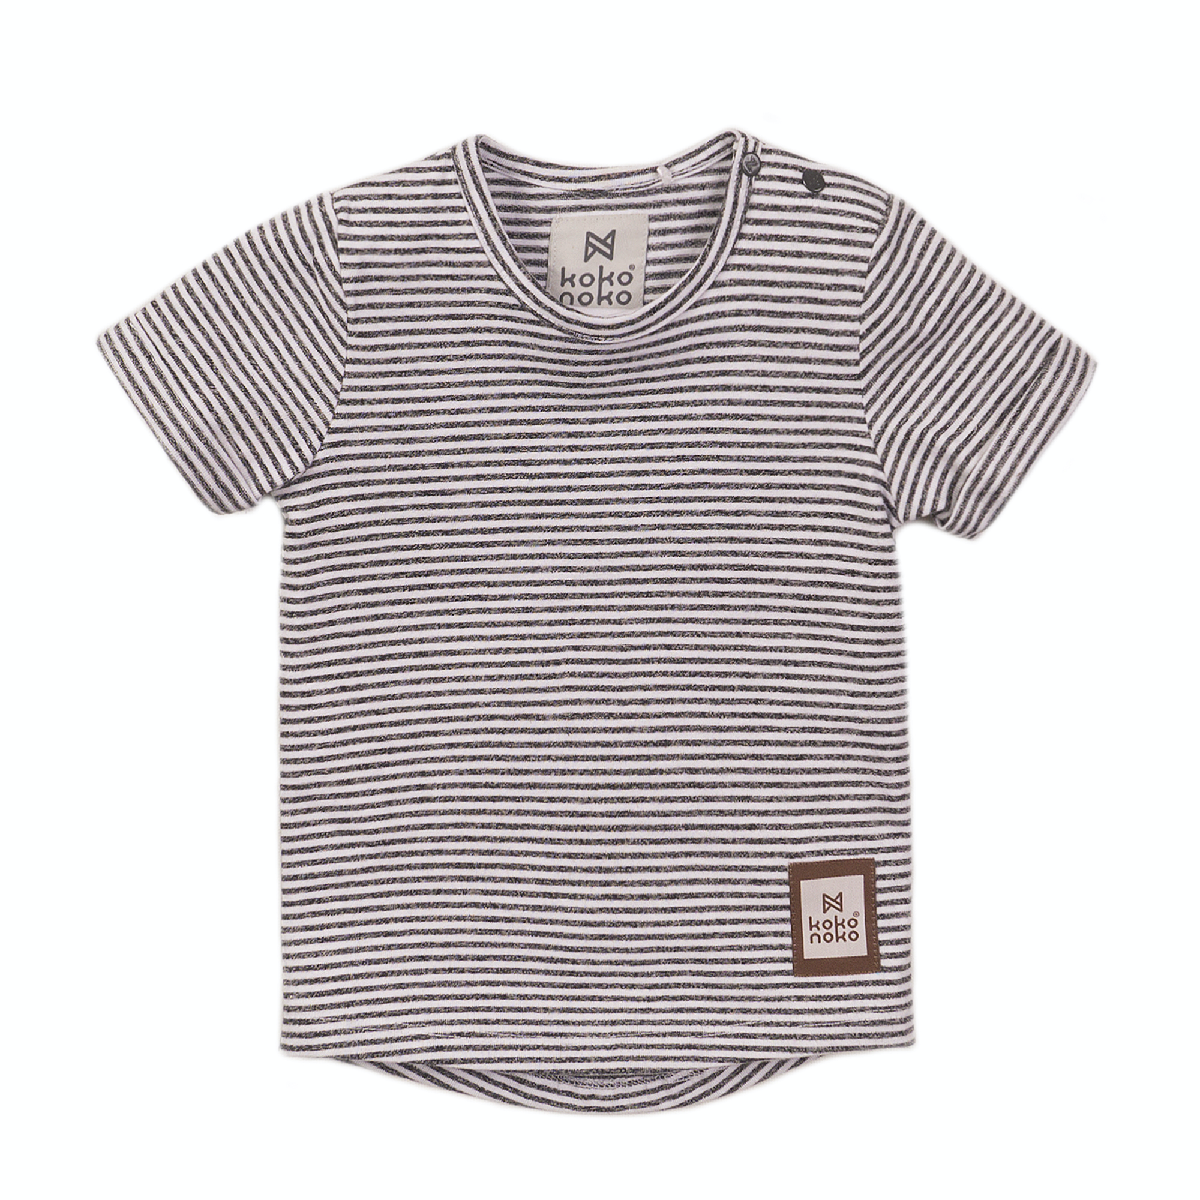 Koko Noko T-shirt small stripes